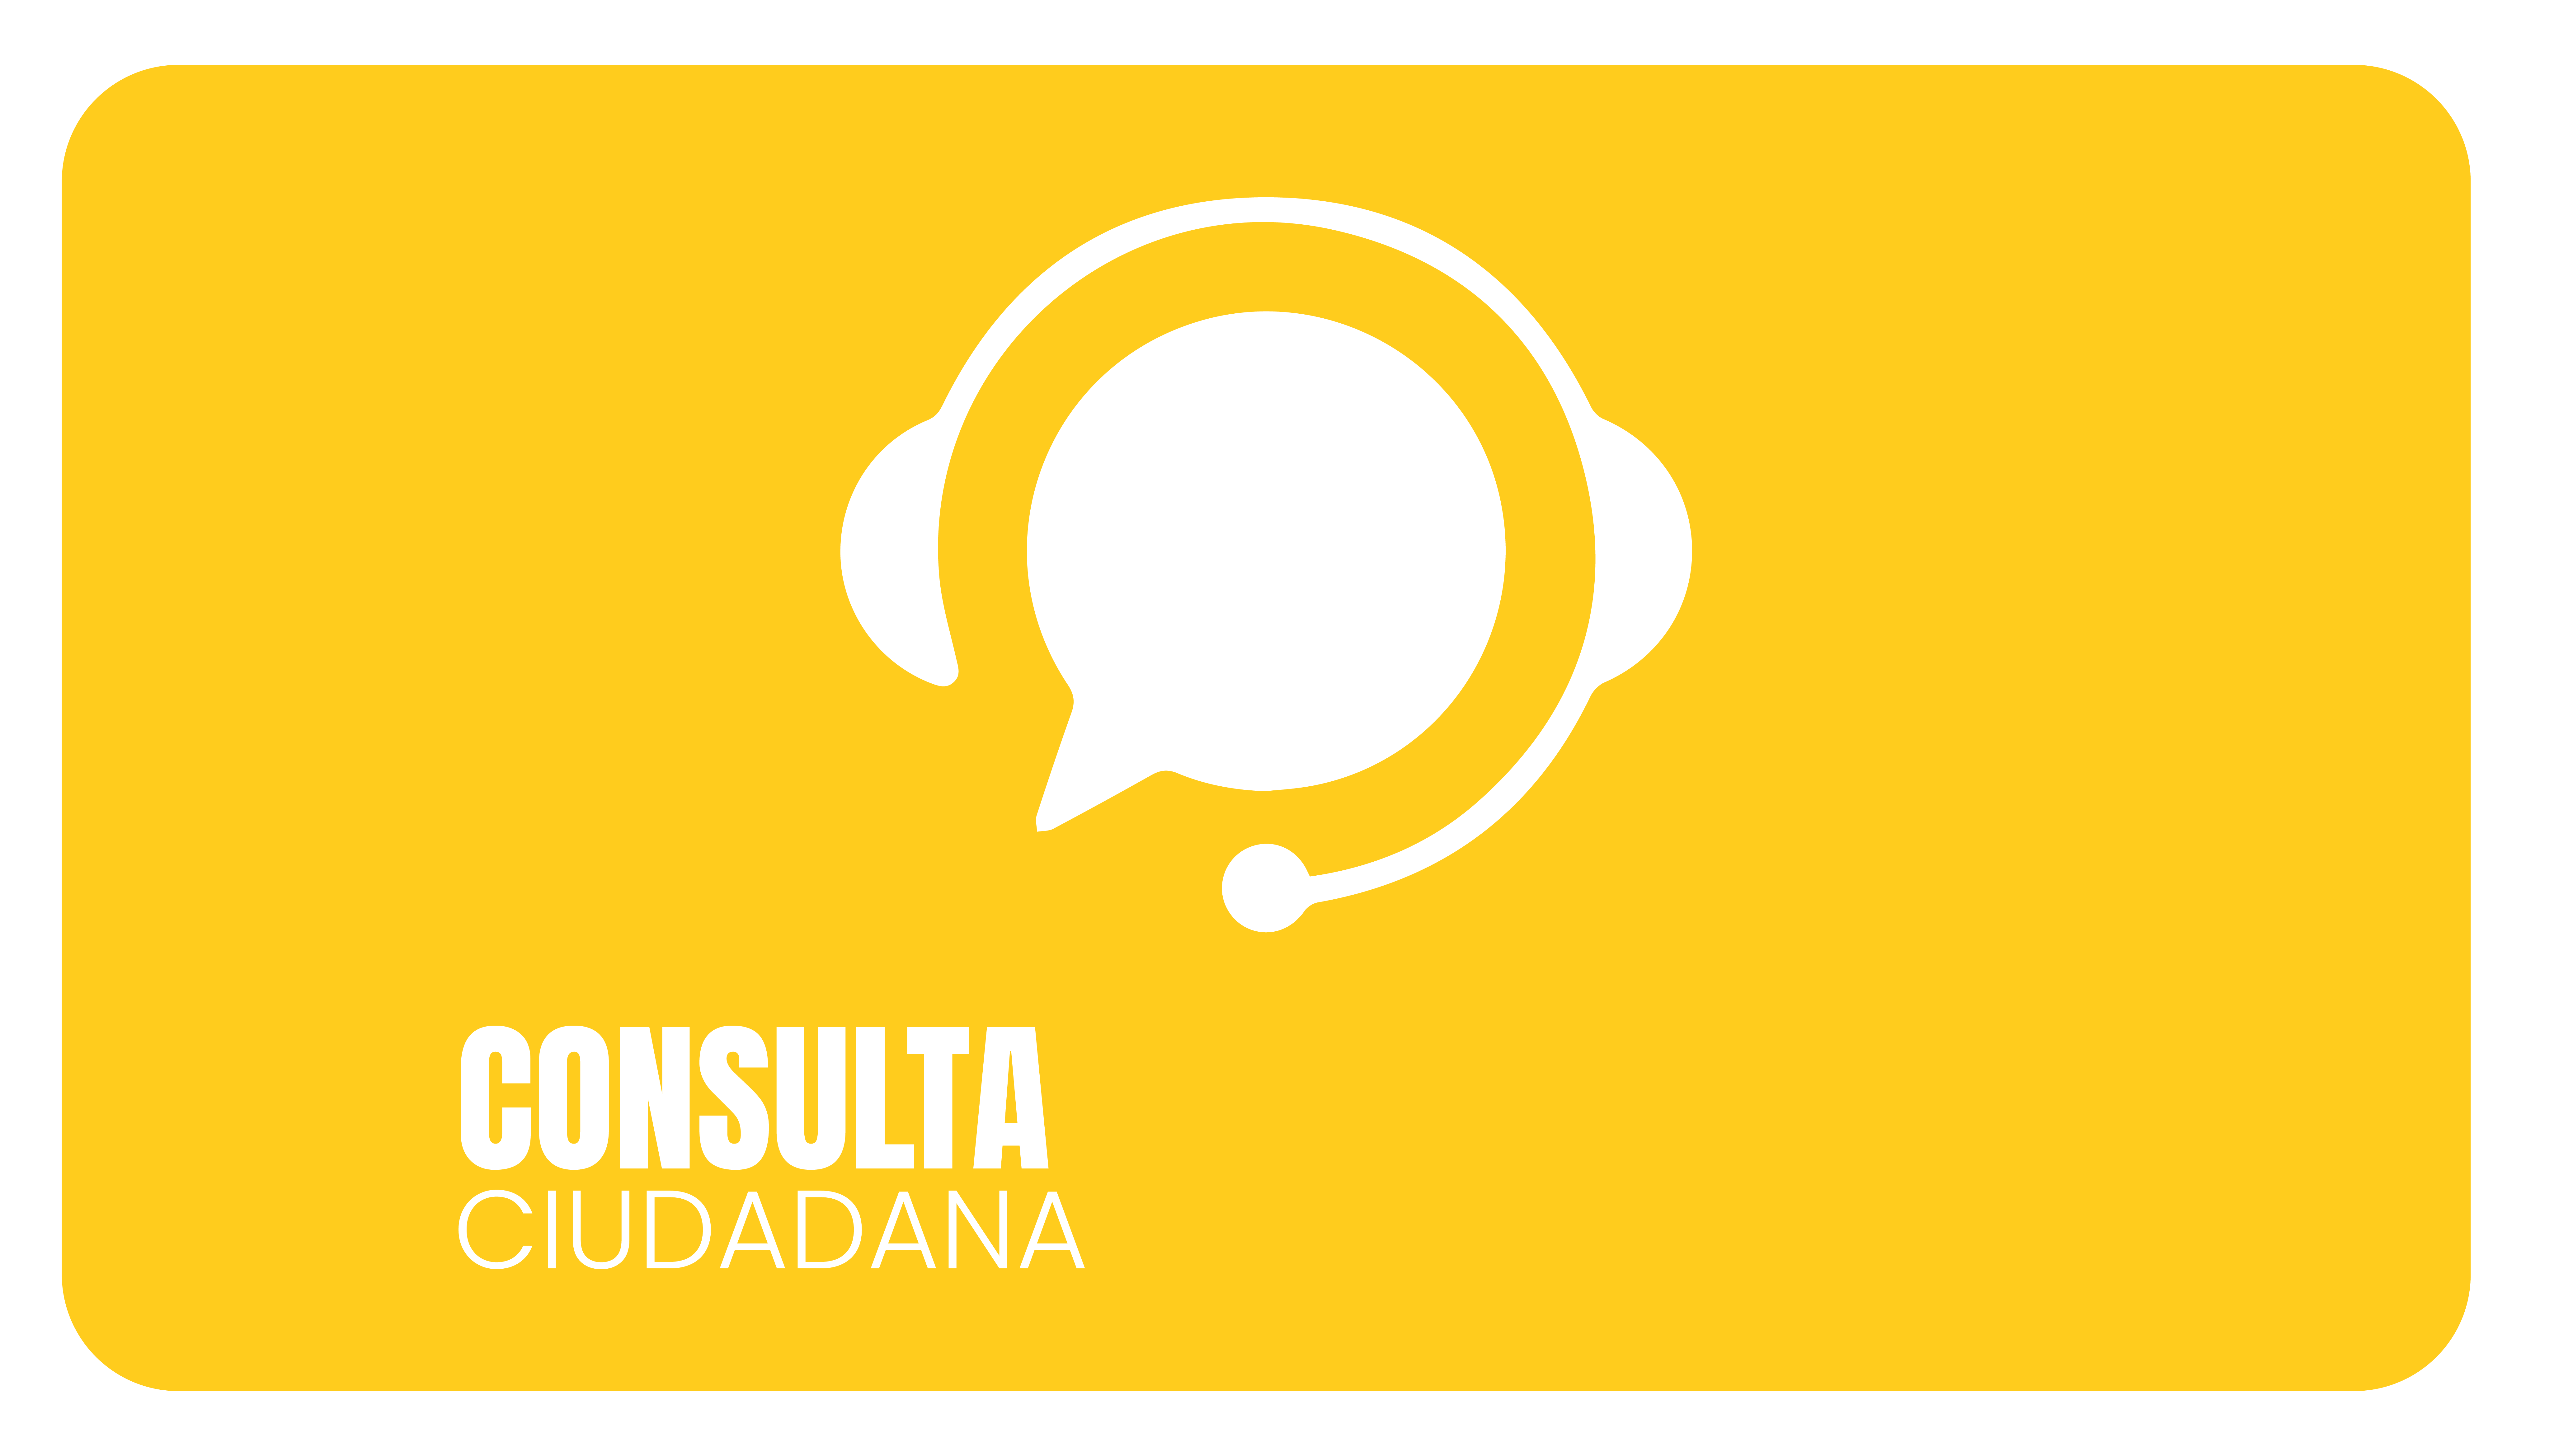 3_CONSULTA_CIUDADANA.png - 308.11 kB